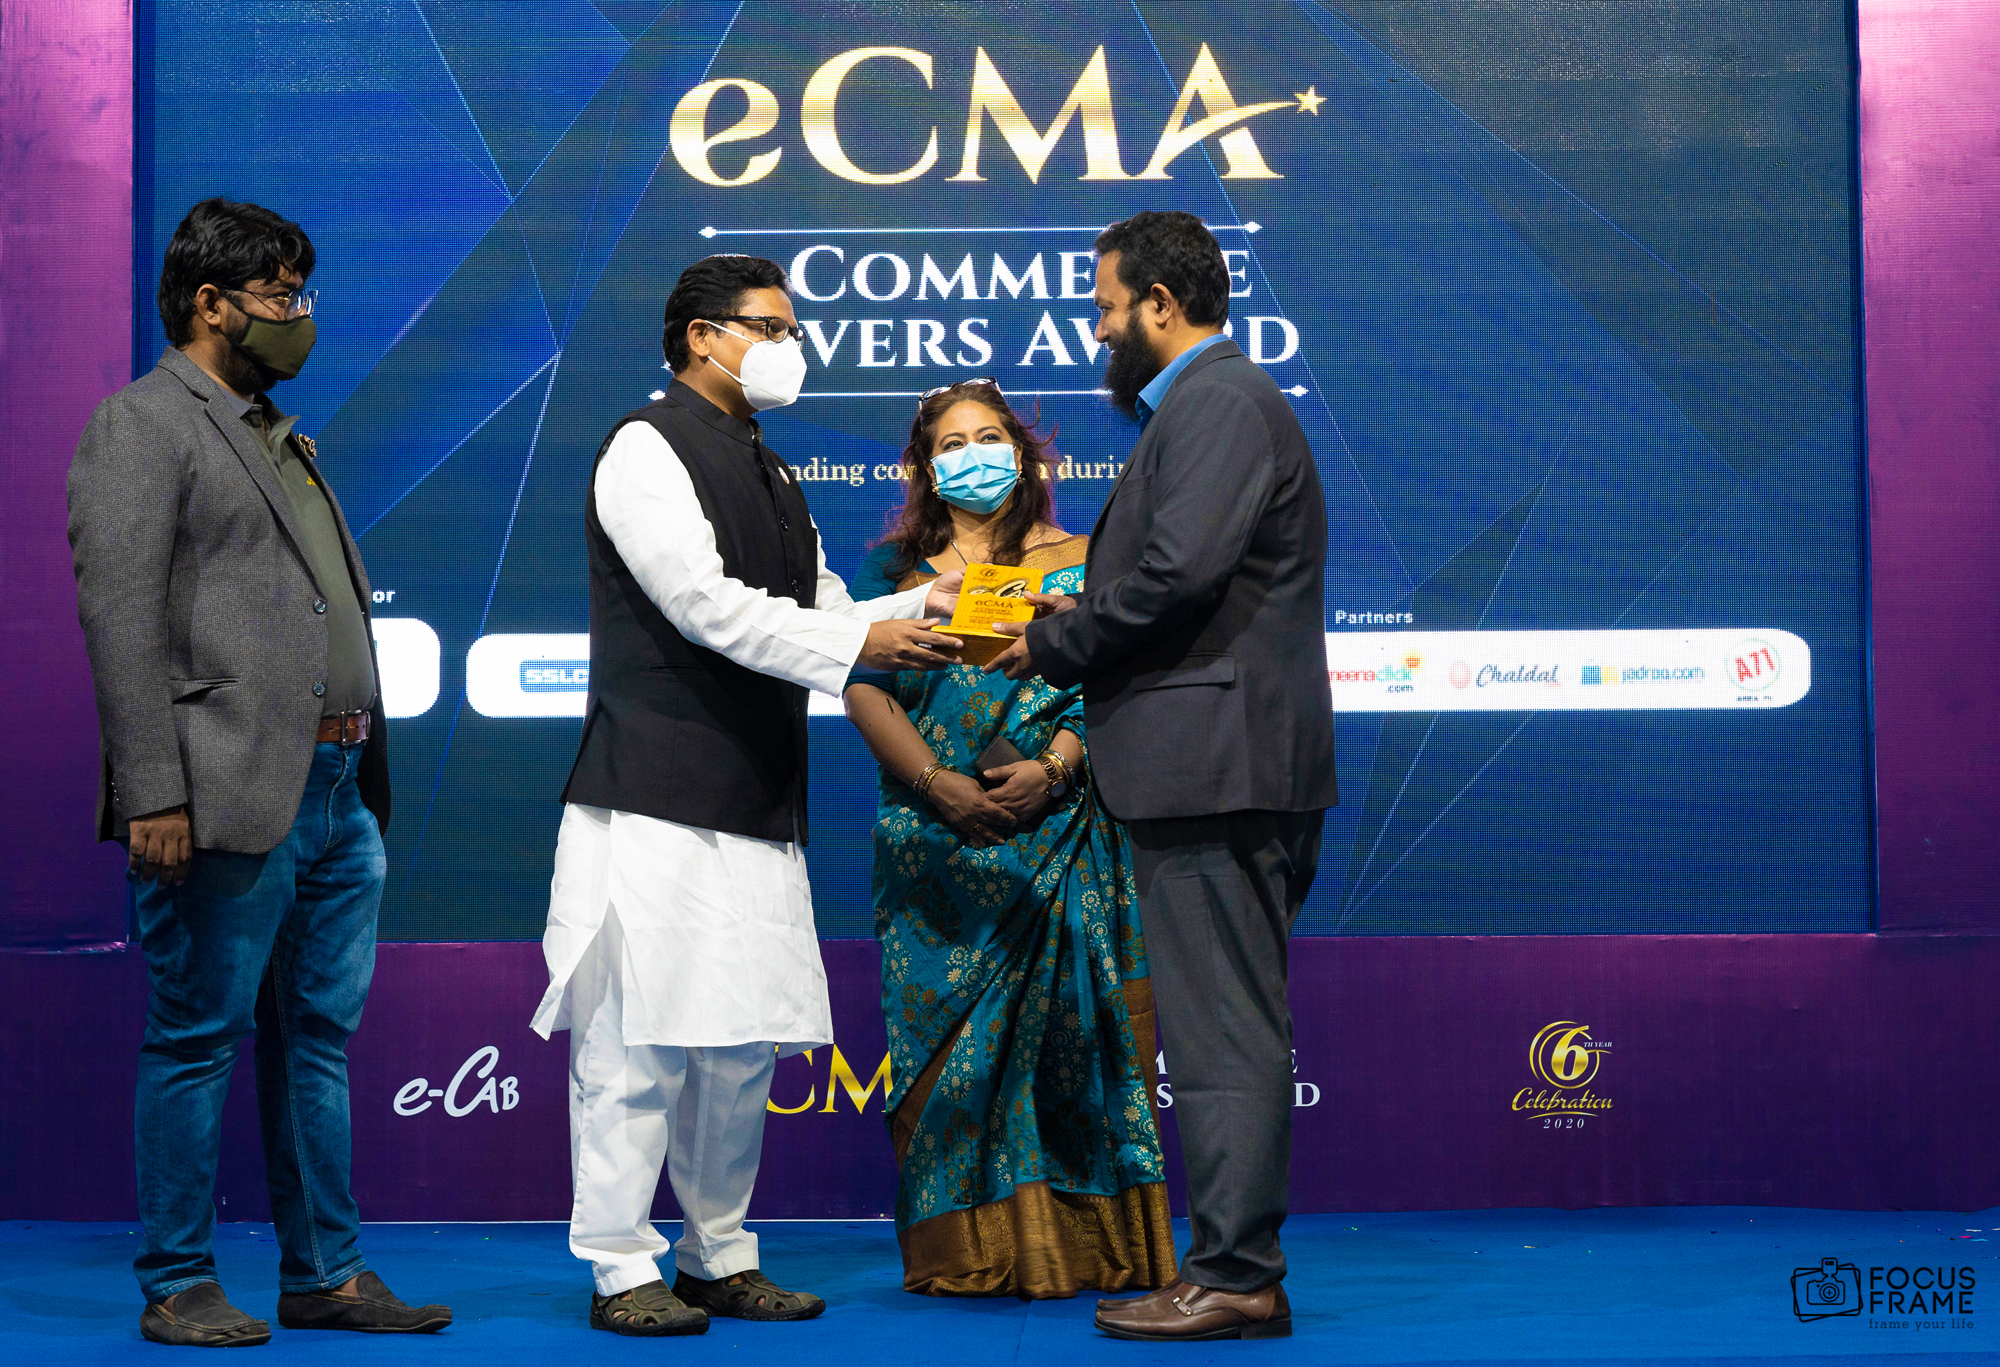 e-Commerce Mover's Award